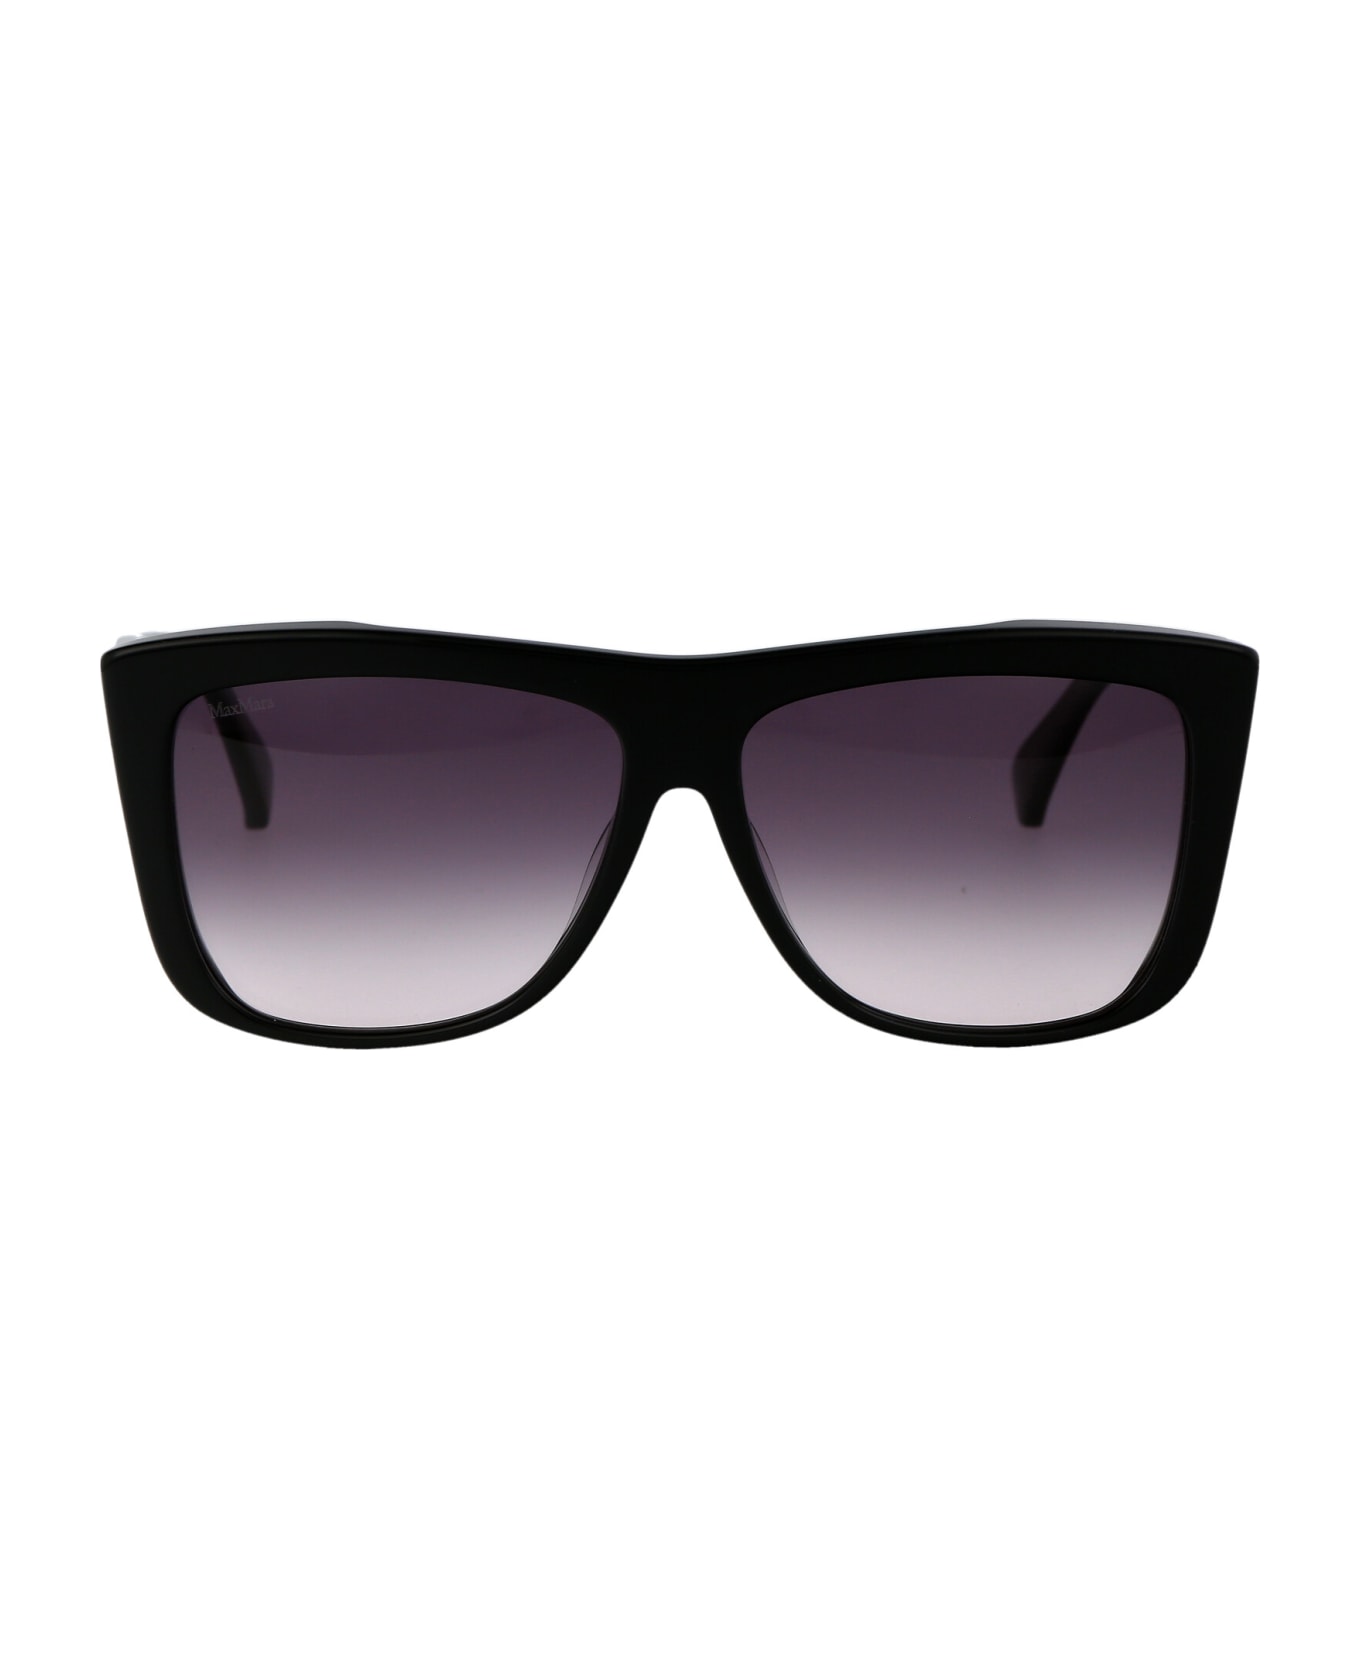 Max Mara Lee1 Sunglasses - 01B Nero Lucido/Fumo Grad